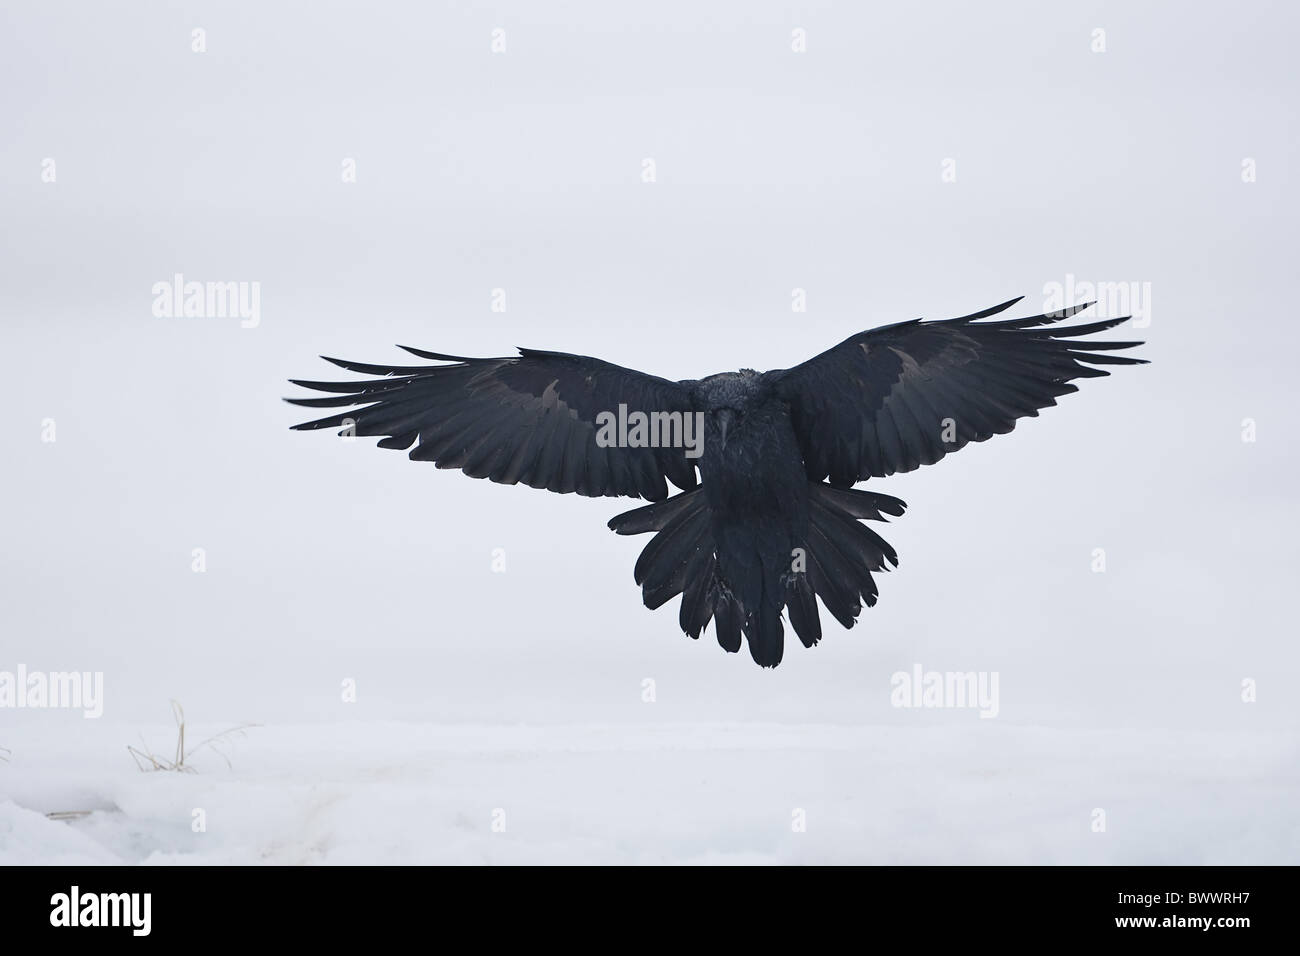 Common Raven (Corvus corax corax) adult, in flight, landing on snow, Lokka, Sodankyla, Finland, winter Stock Photo